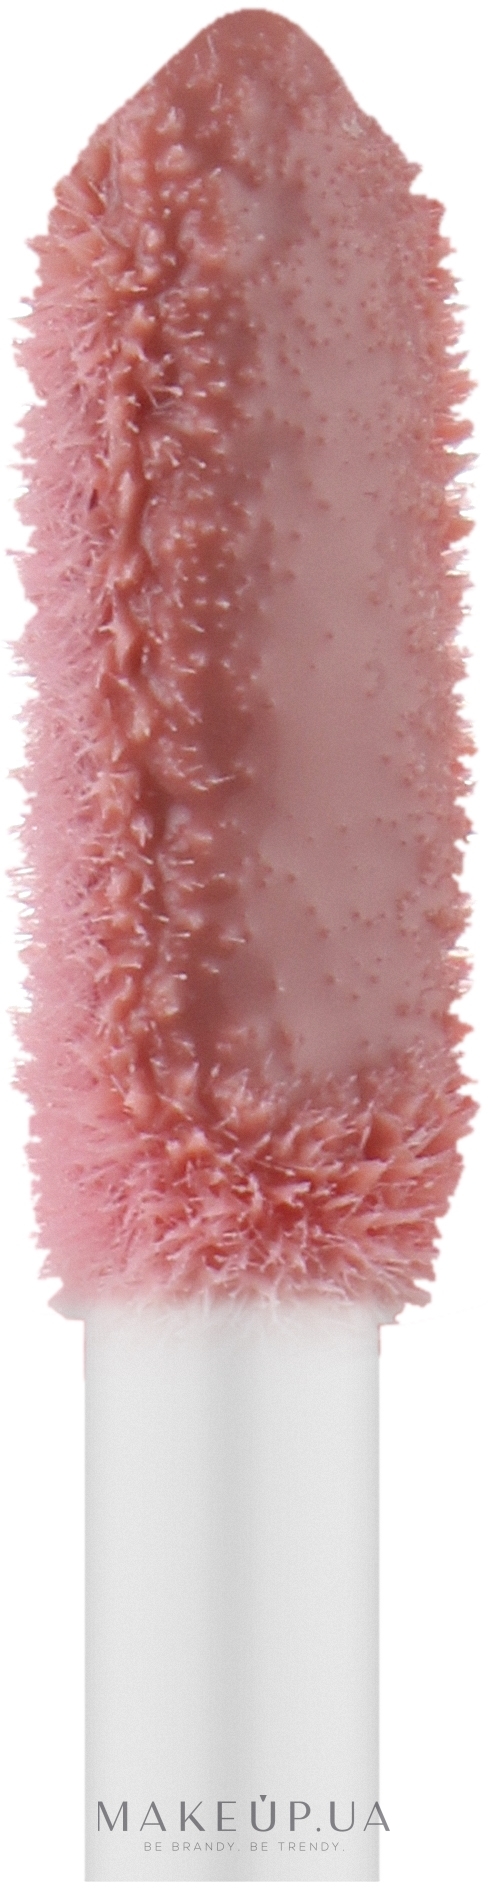 Кремовый блеск для губ - Golden Rose Miss Beauty Glow Shine 3D Lipgloss — фото 01 - Nude Chic